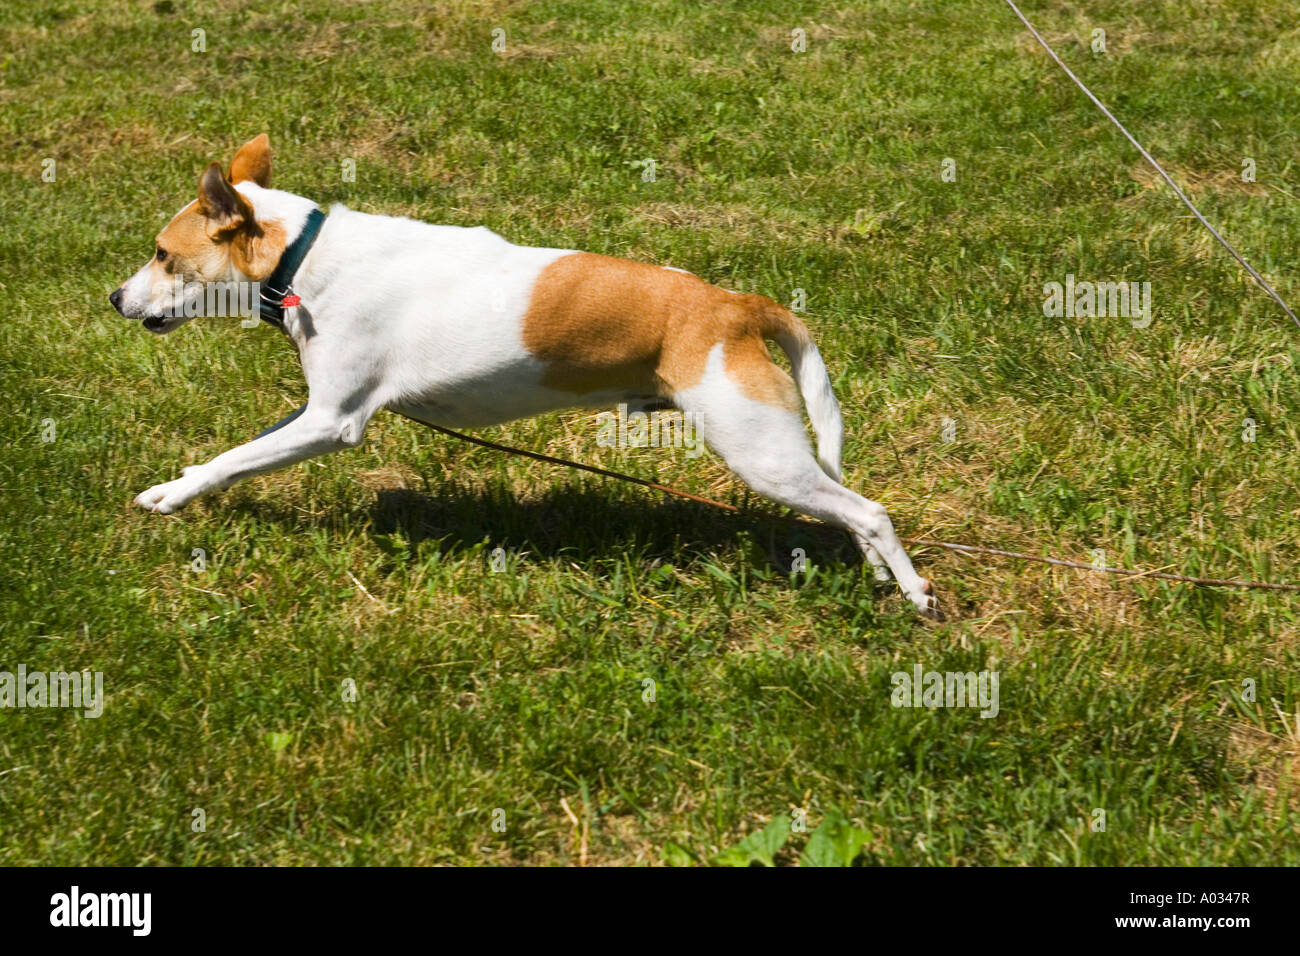 Haustiere Richmond Illinois gemischte Rasse braune und weiße Hund mit  Halsband Teil Pitbull an der Leine laufen Stockfotografie - Alamy